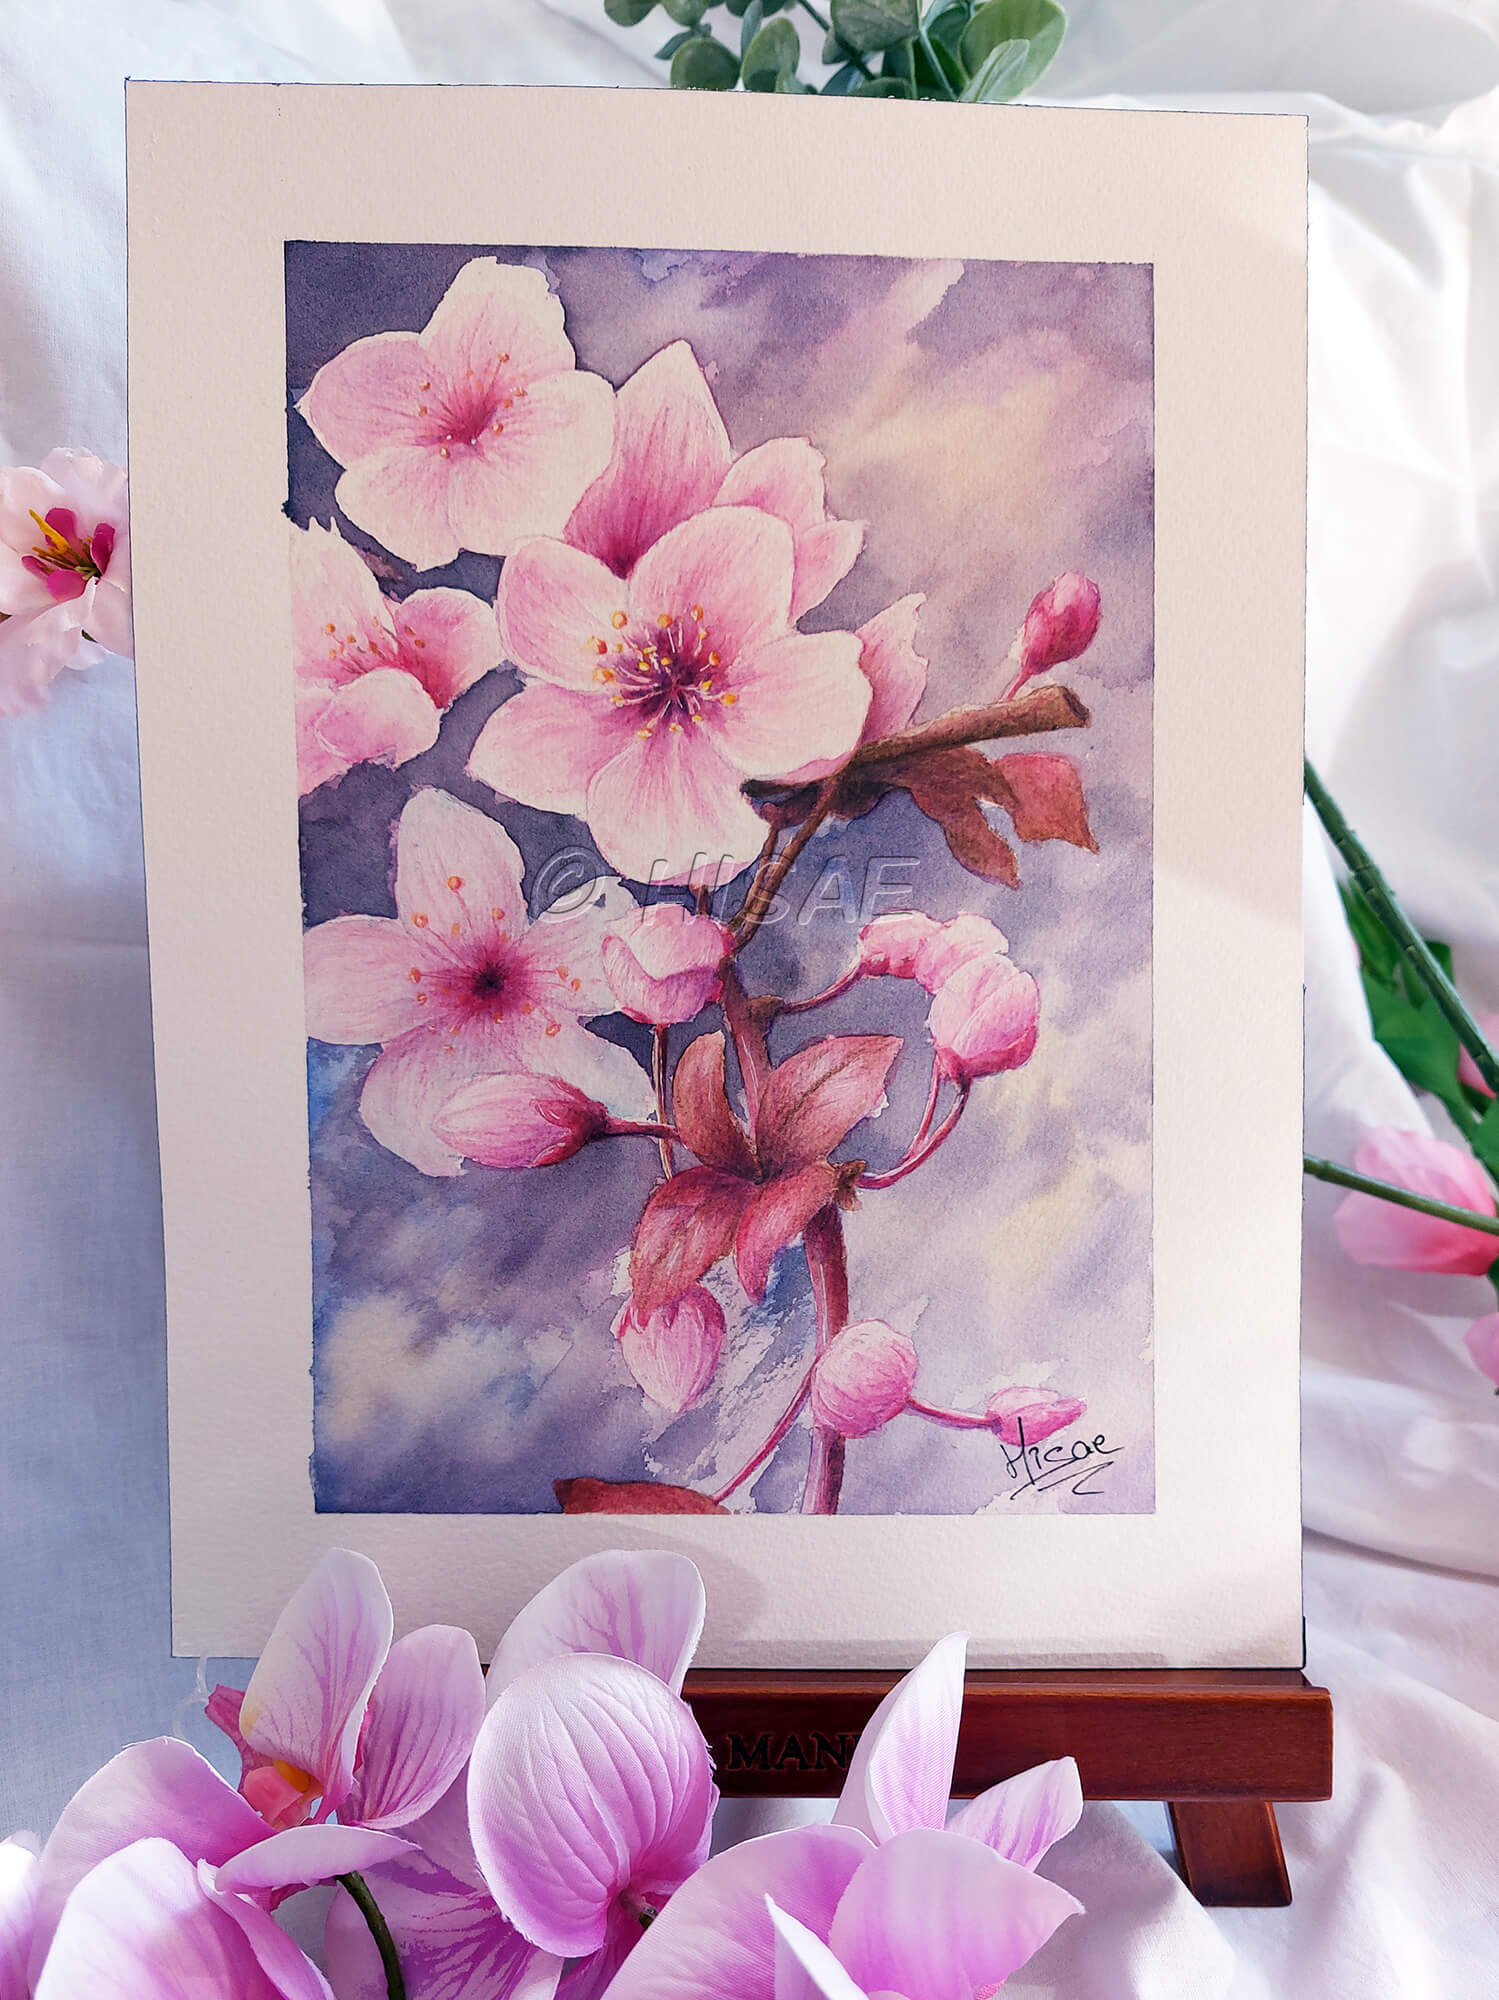 Dessin original à l'aquarelle représentant une branche de cerisier japonais et ses fleurs et présenté sur un chevalet @Hisae illustrations